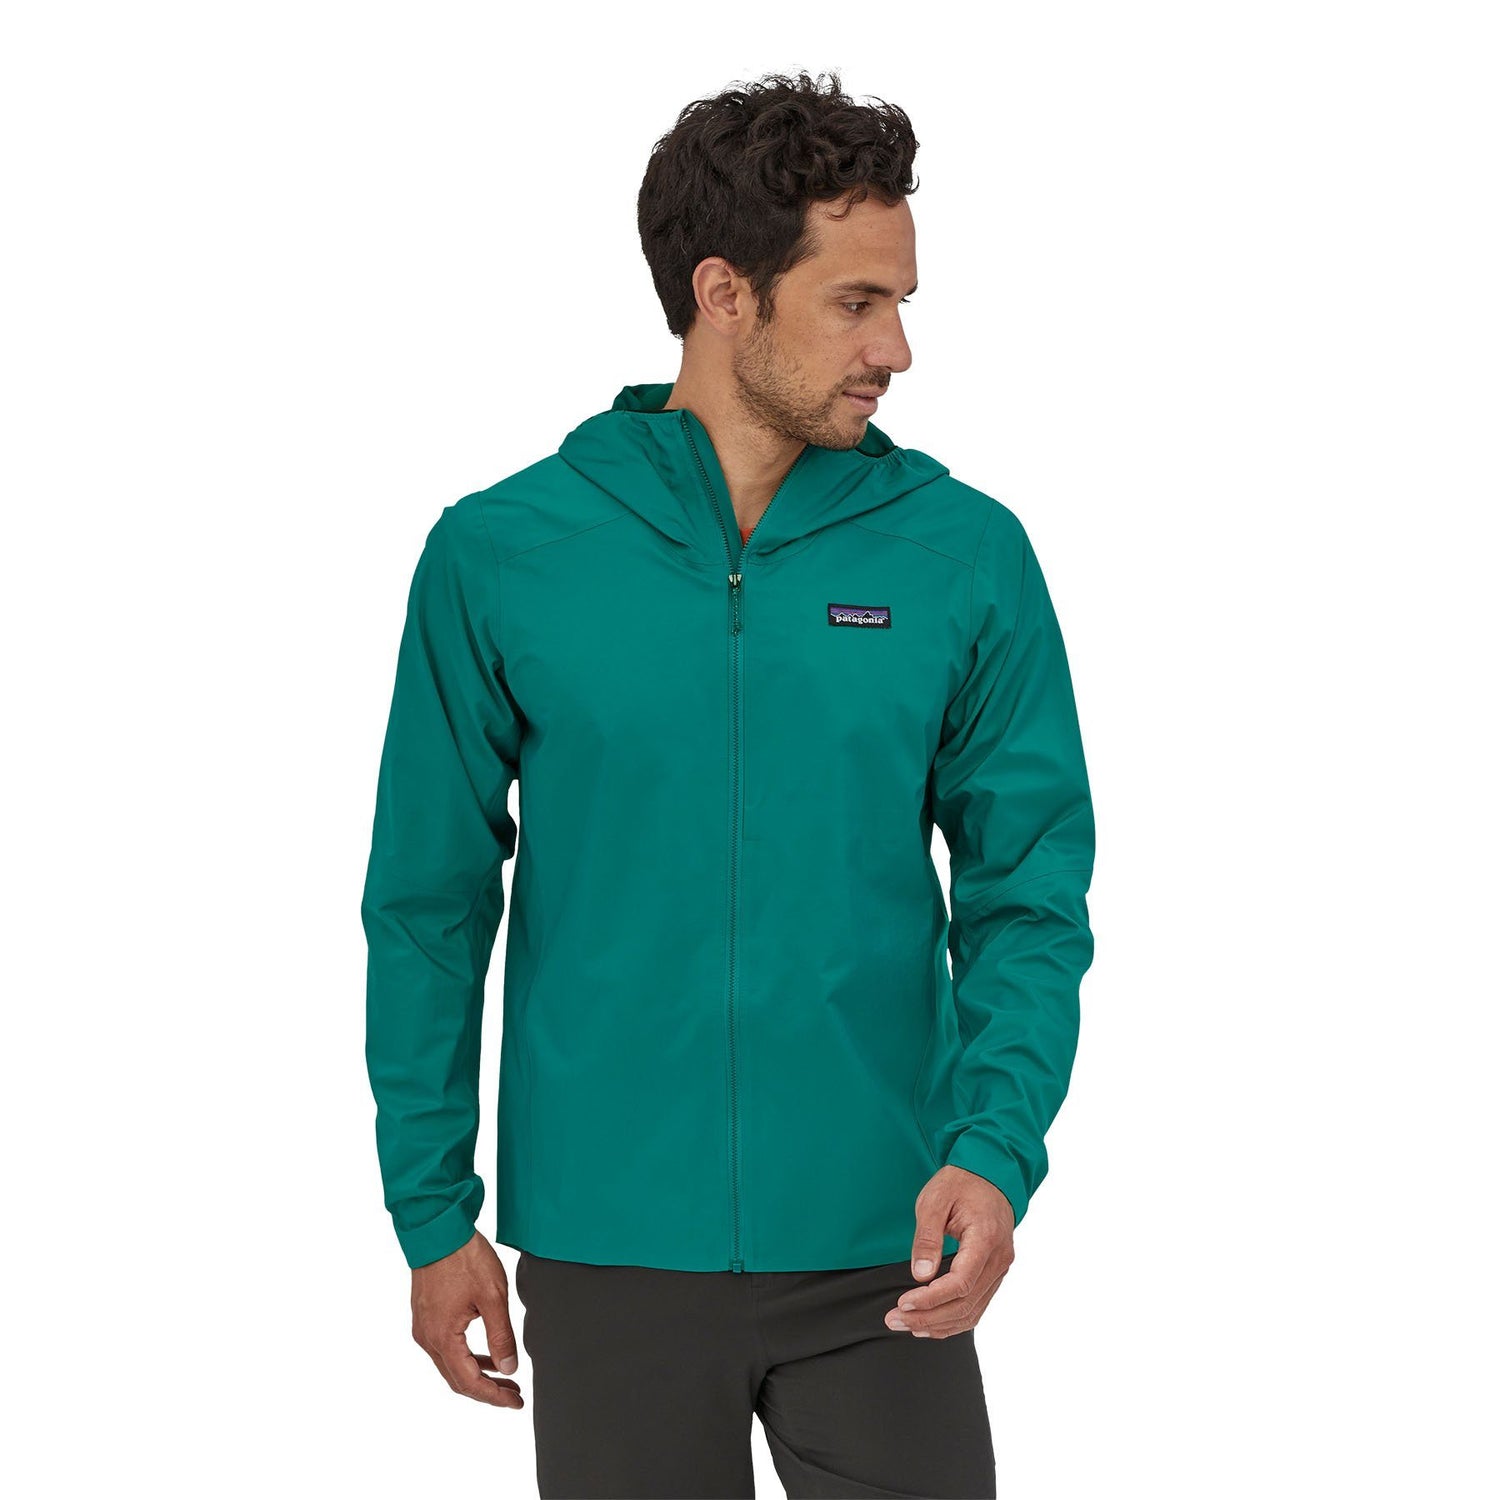 Patagonia - M's Dirt Roamer Jacket - 100% Recycled Nylon - Weekendbee - sustainable sportswear